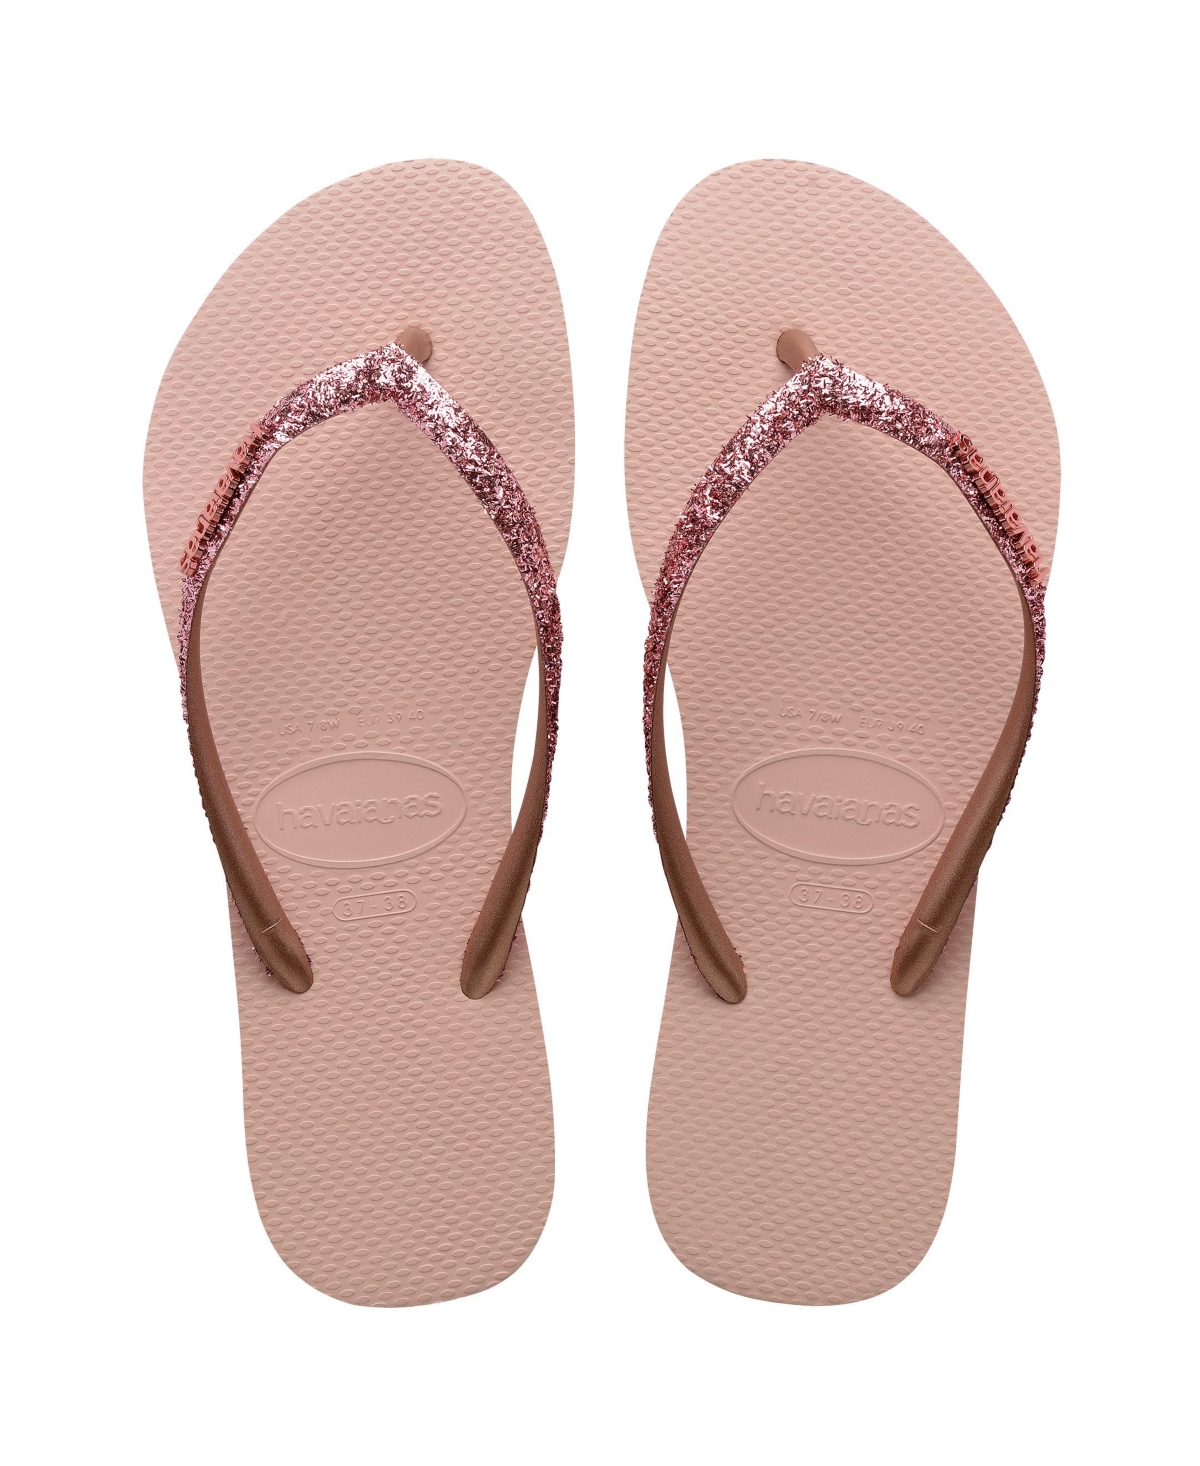 Women's Slim Glitter Ii Sandals - Ballet Rose, Golden Blush Polyvinyl Chlo